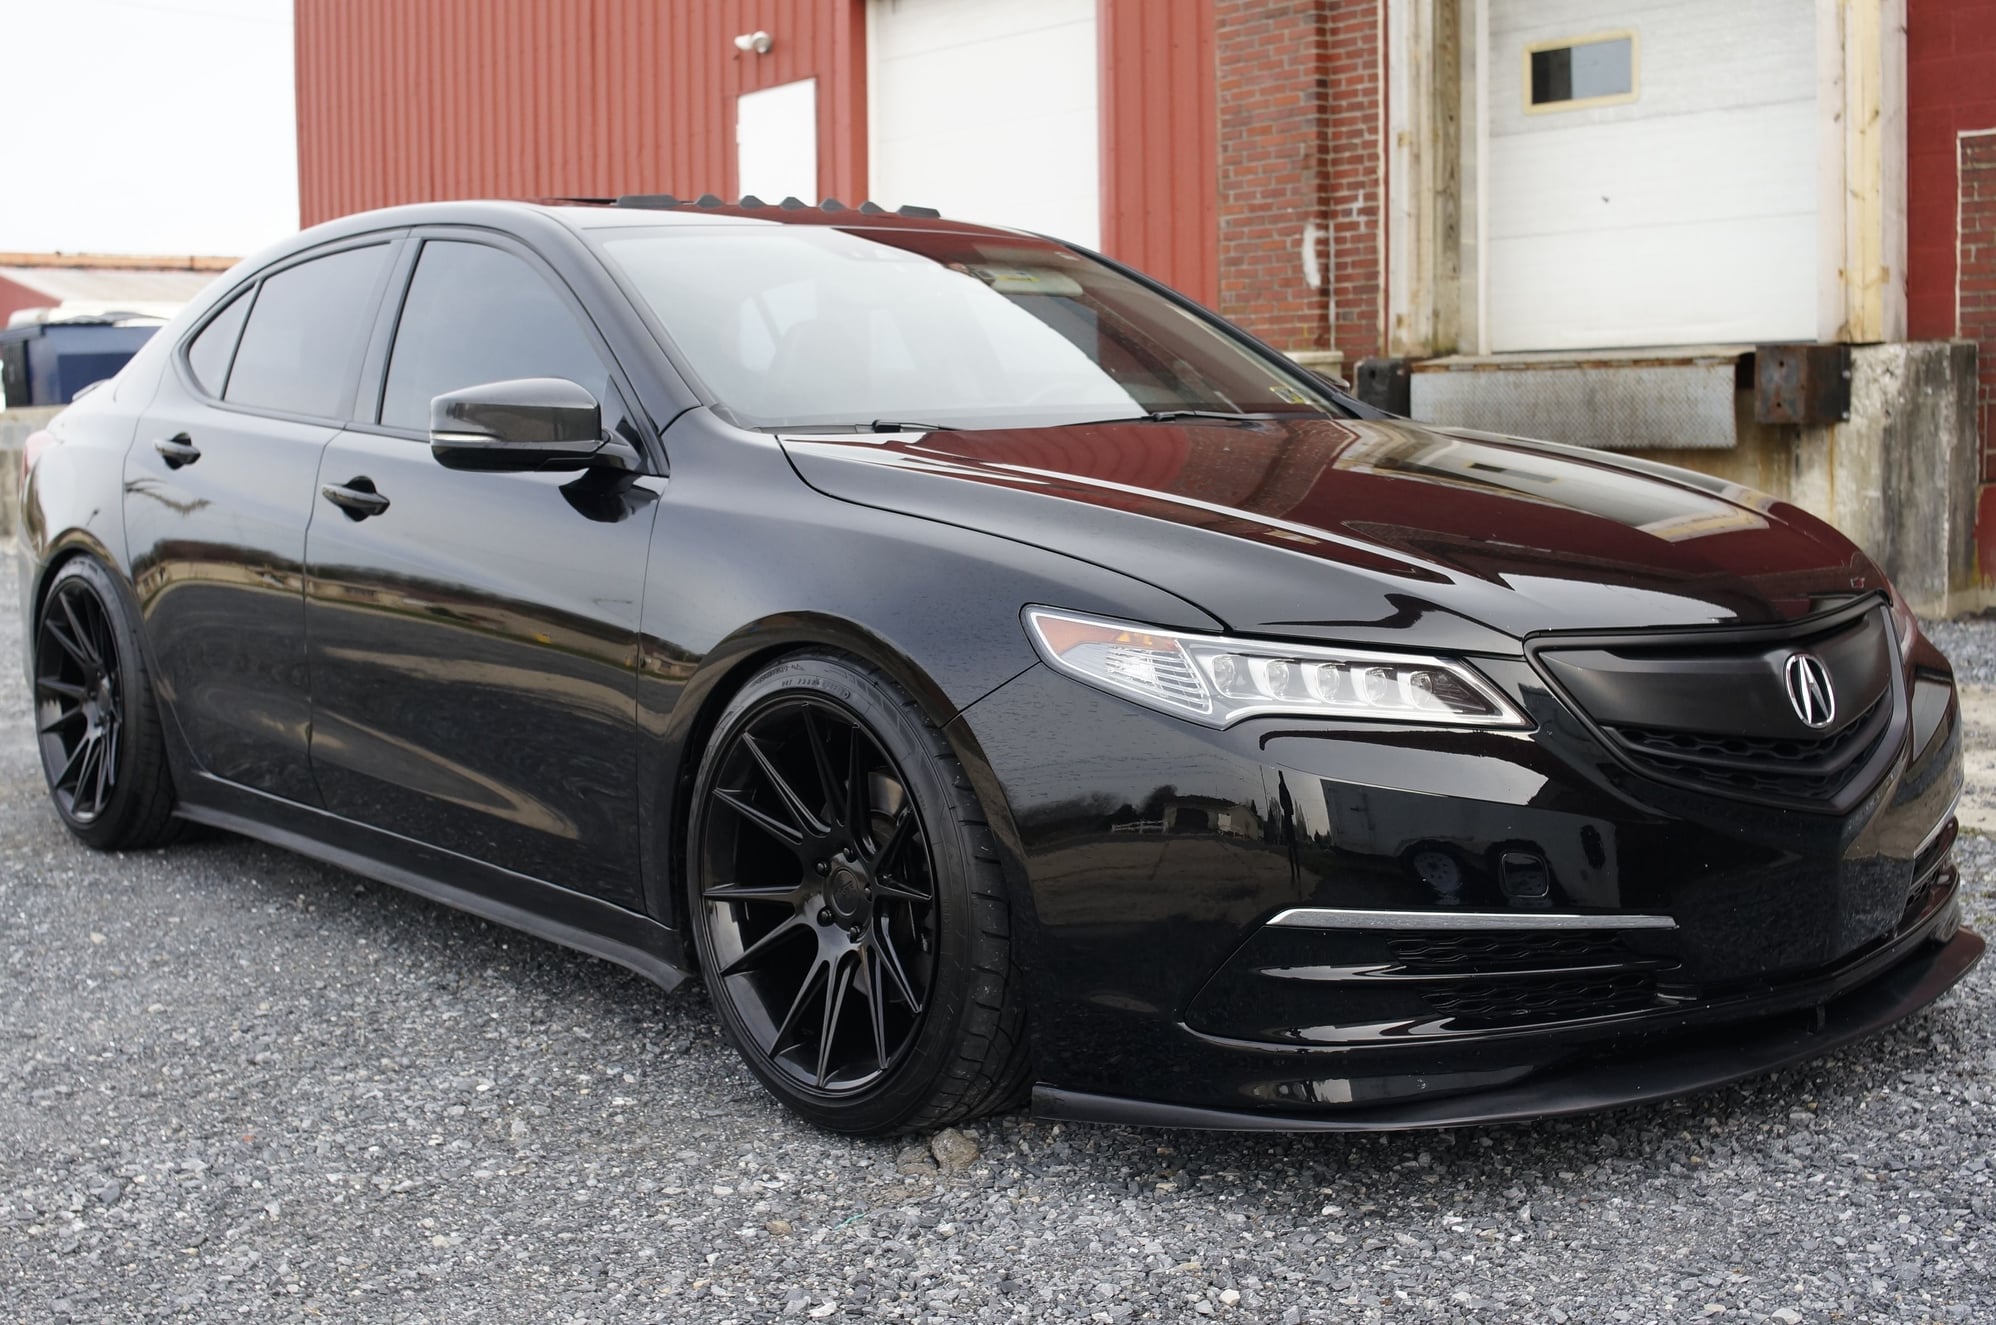 2015 Acura TLX - SOLD: 2015 acura TLX v6 tech (Rebuilt Title) - Used - VIN 19UUB2F58FA010502 - 29,320 Miles - 6 cyl - 2WD - Automatic - Sedan - Black - Lebanon, PA 17073, United States